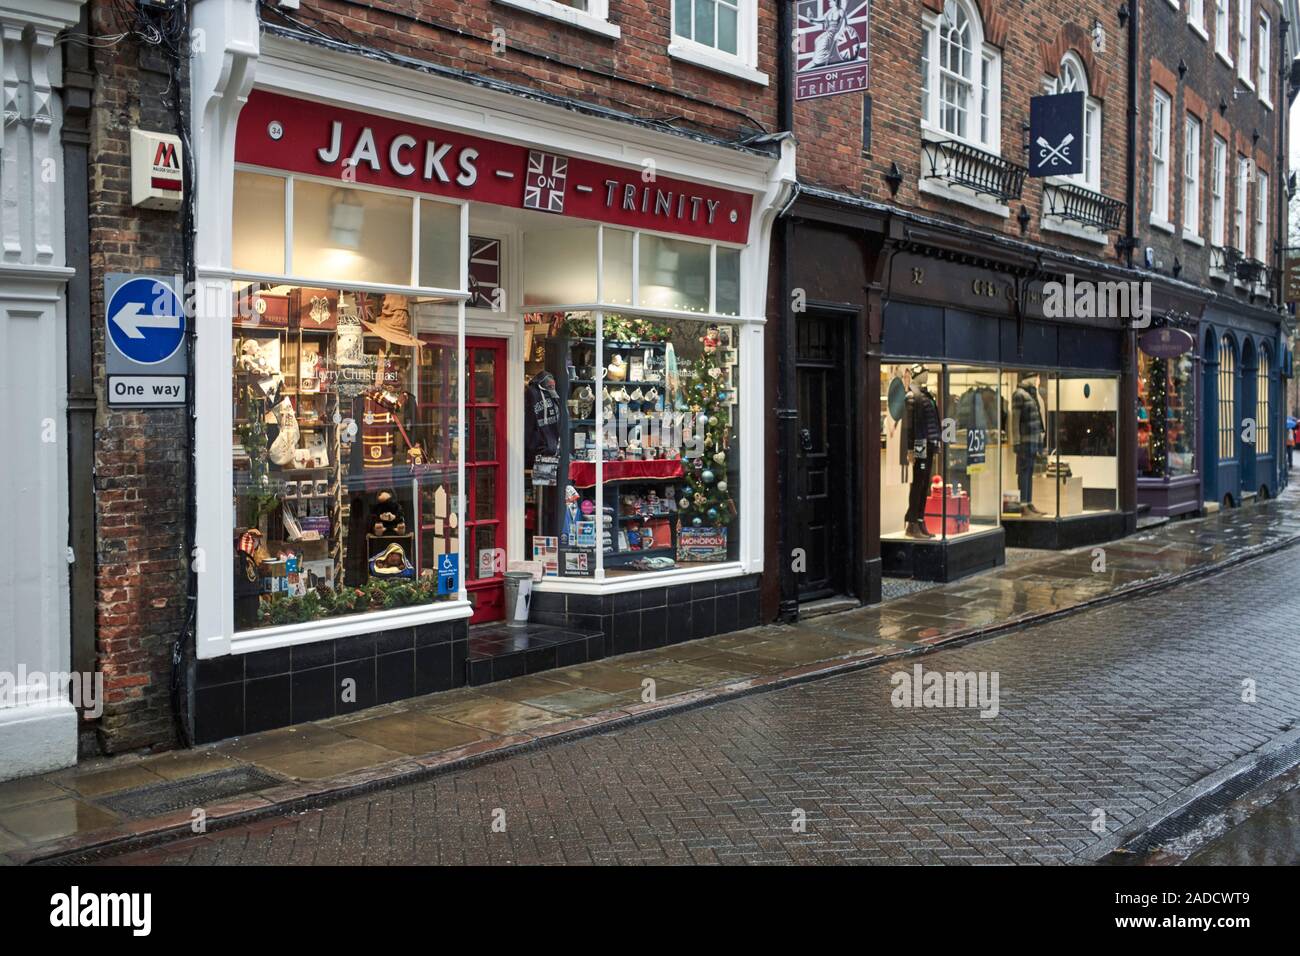 Jacks shop on Trinity Street in a rainy Cambridge, UK Stock Photo